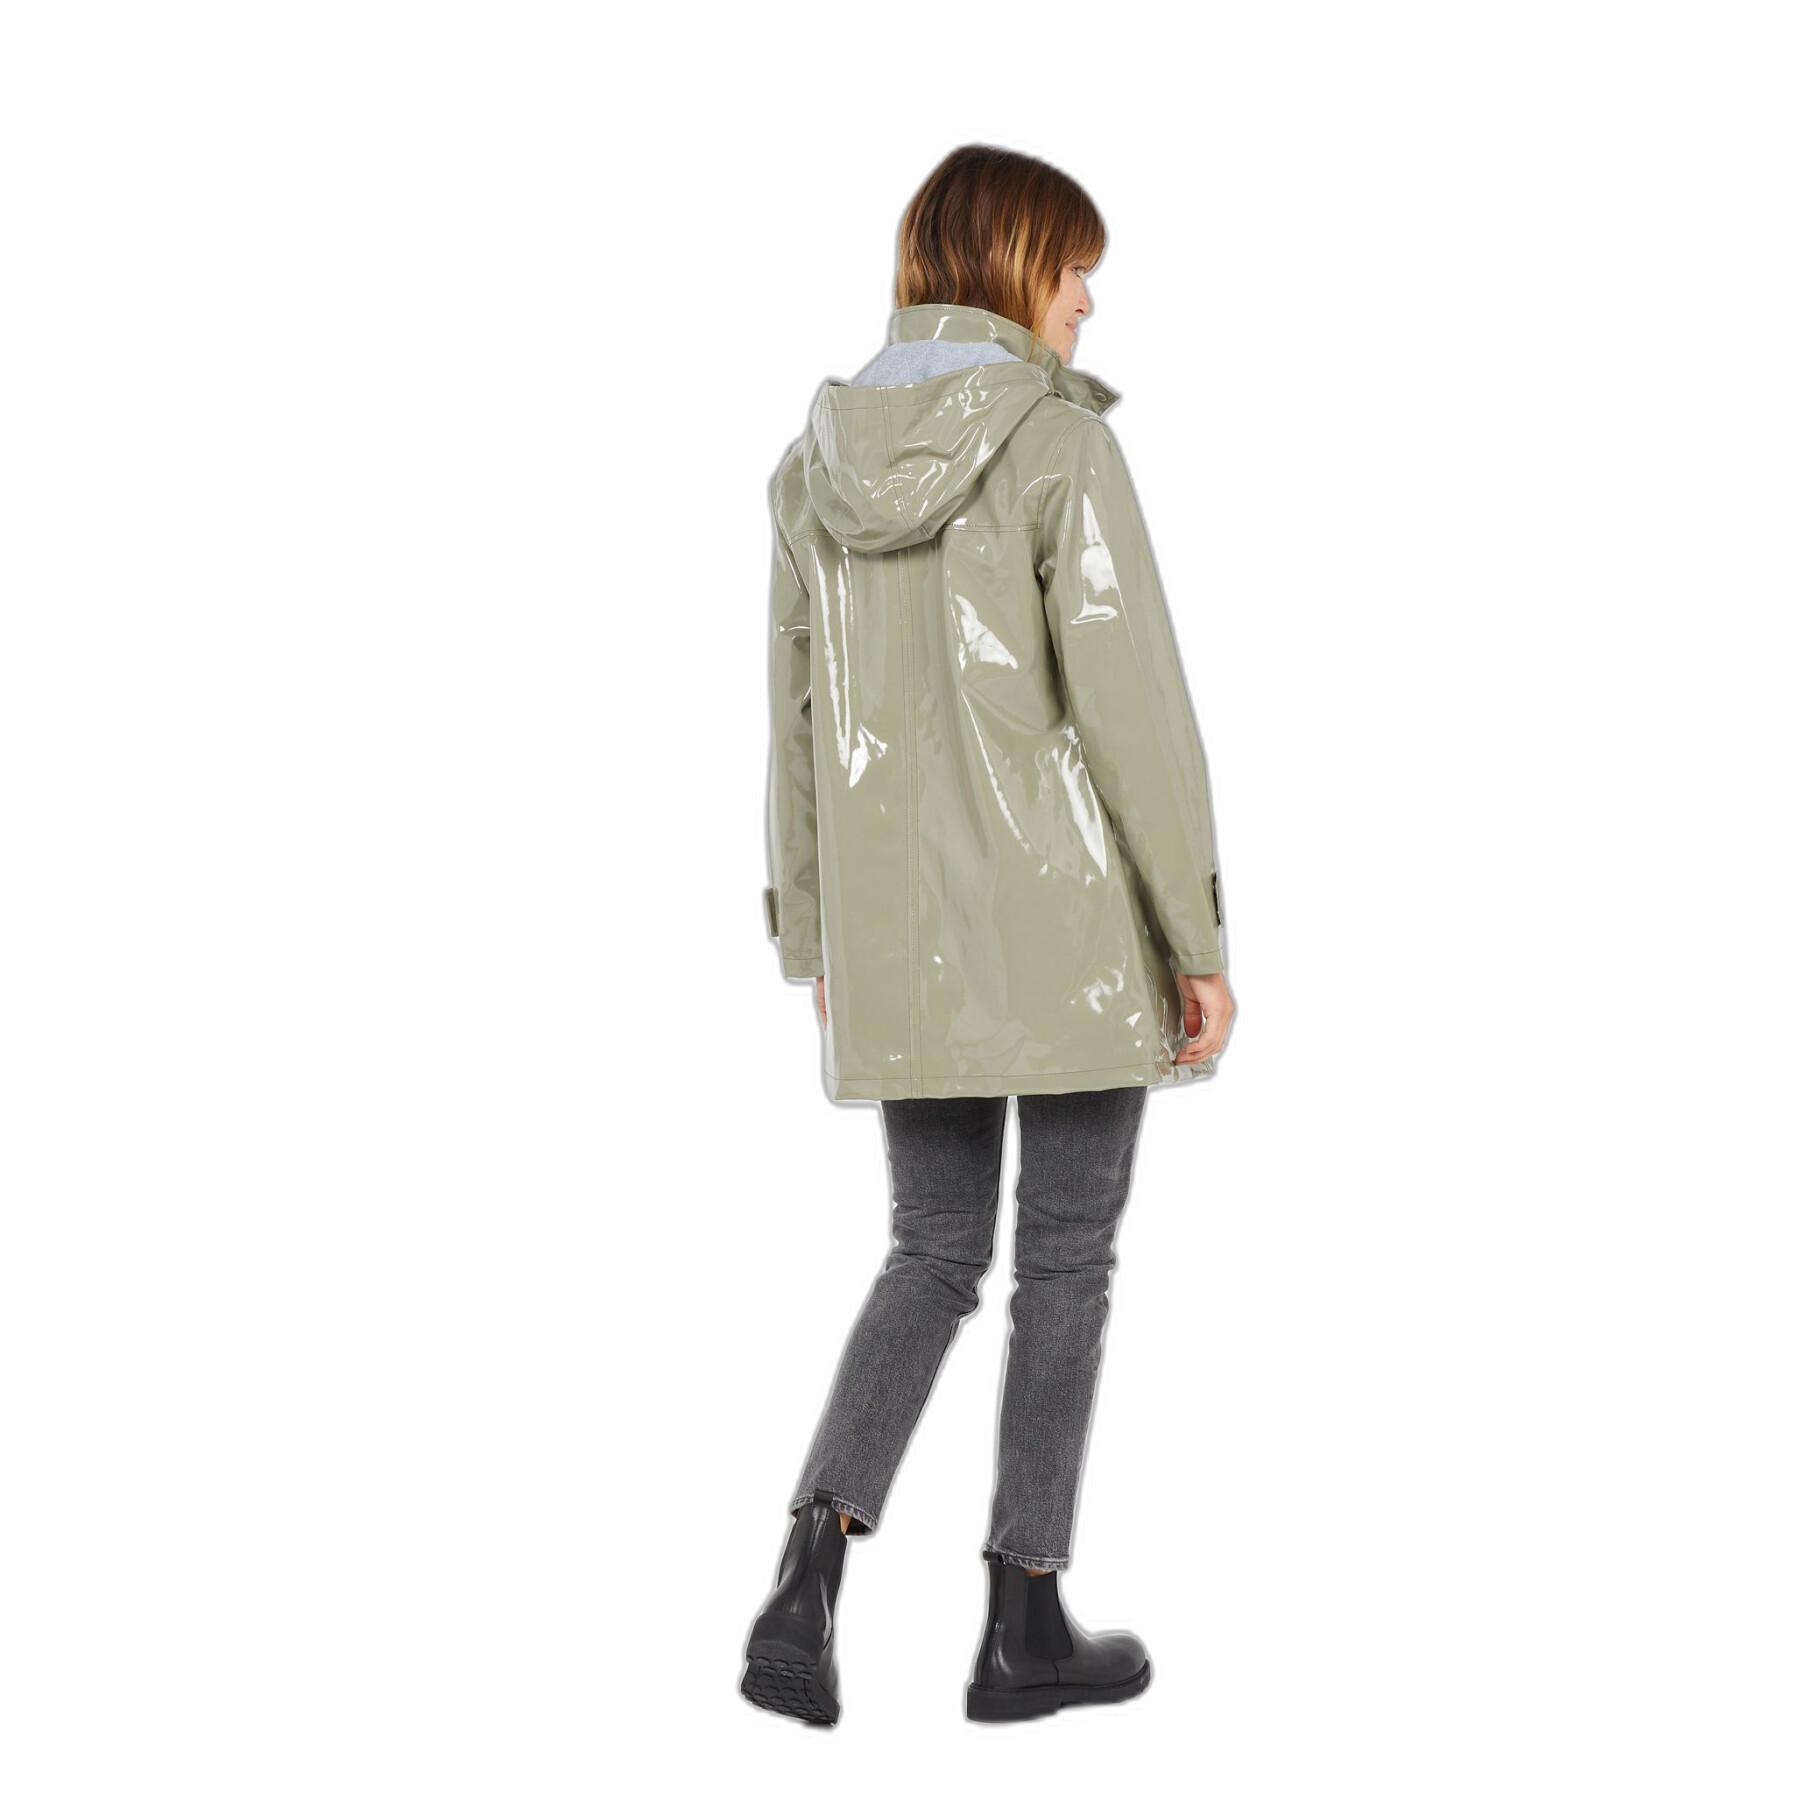 Women's waterproof jacket Armor-Lux Maé